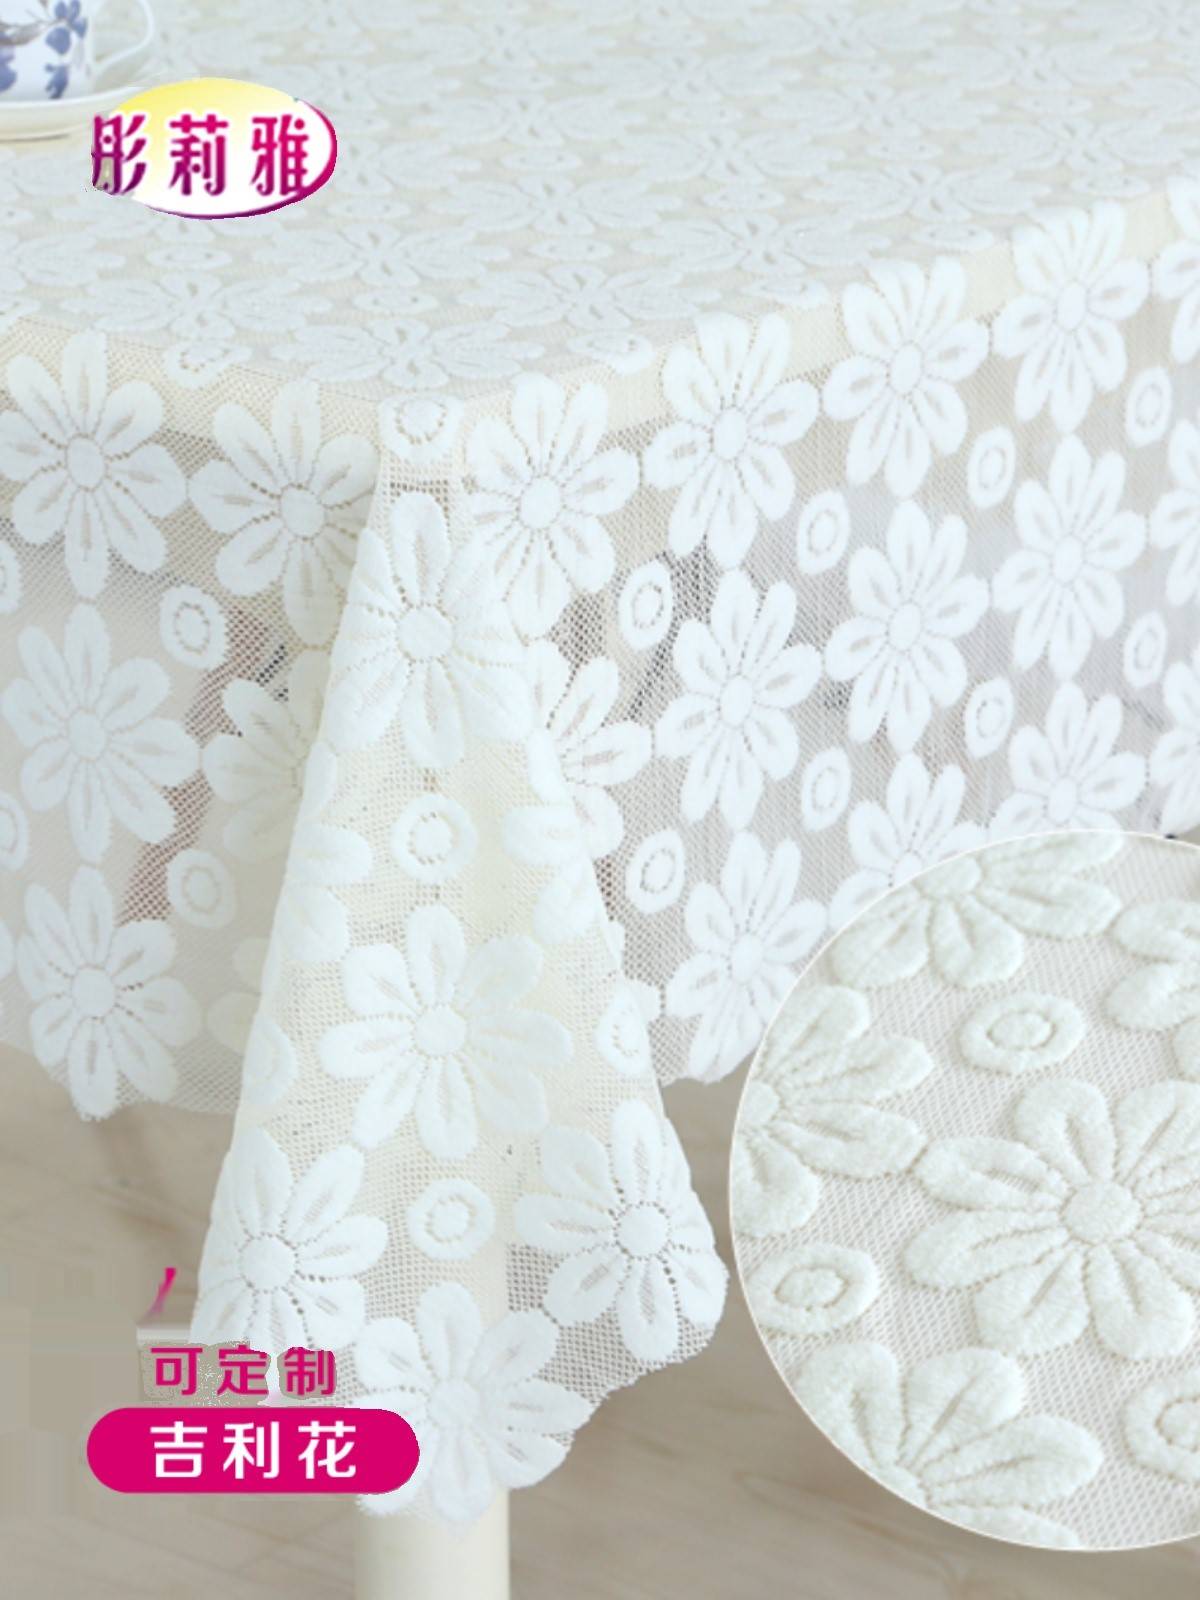 蕾丝花边桌布布艺色长方形正方形家用茶几餐桌圆桌沙发巾白